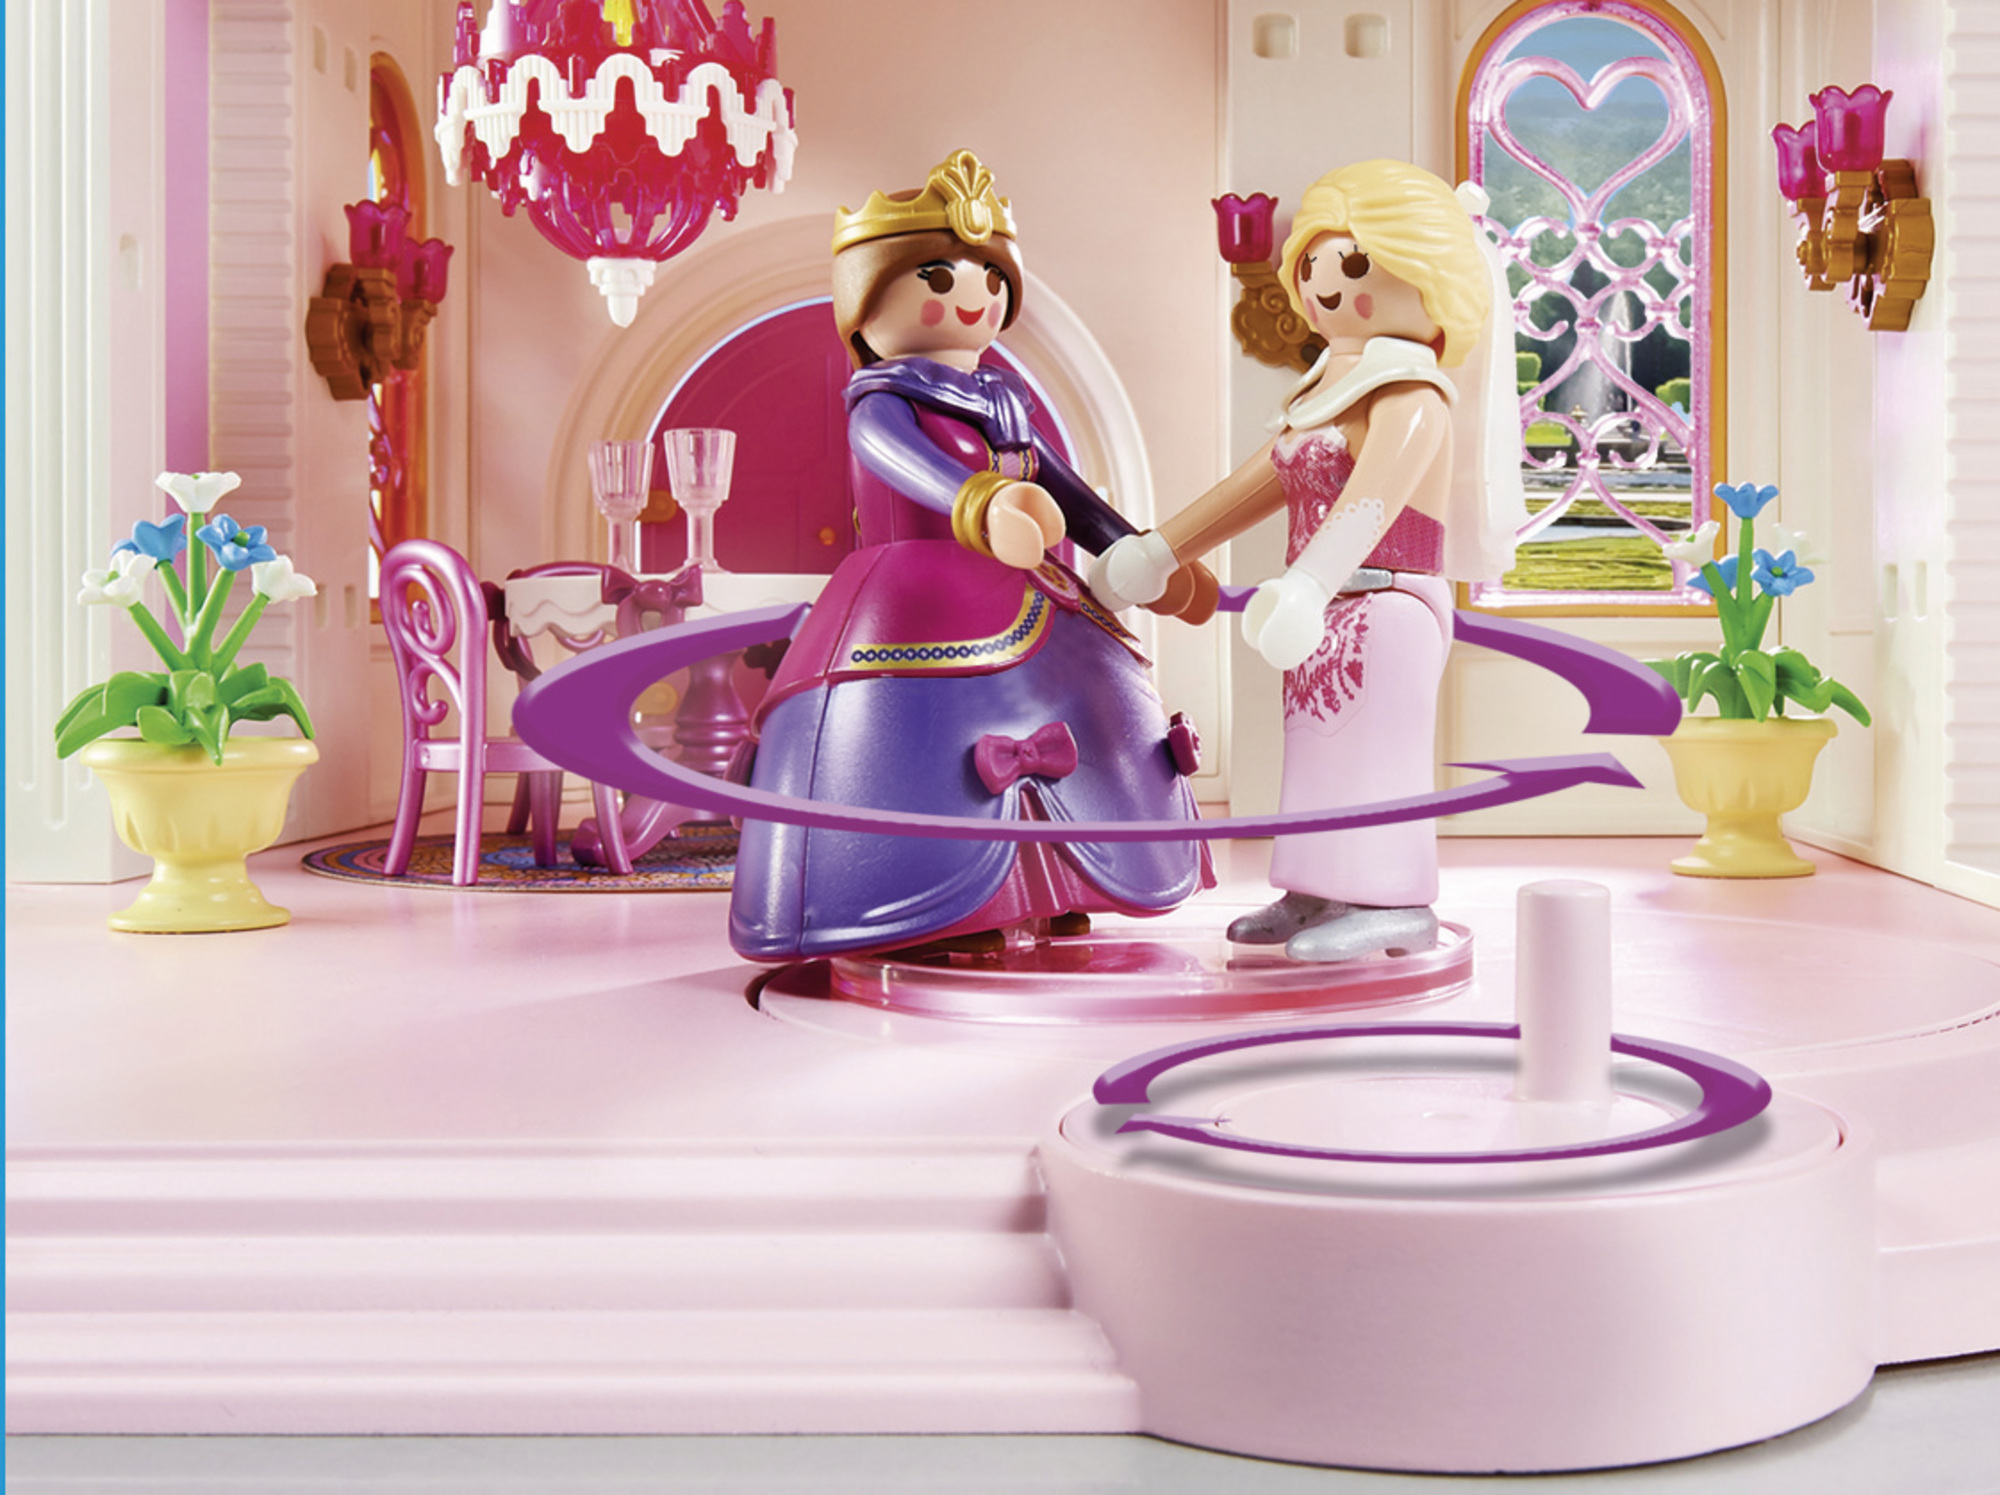 Playmobil Princess Παραμυθένιο Πριγκιπικό Παλάτι 70447 - Playmobil, Playmobil Princess